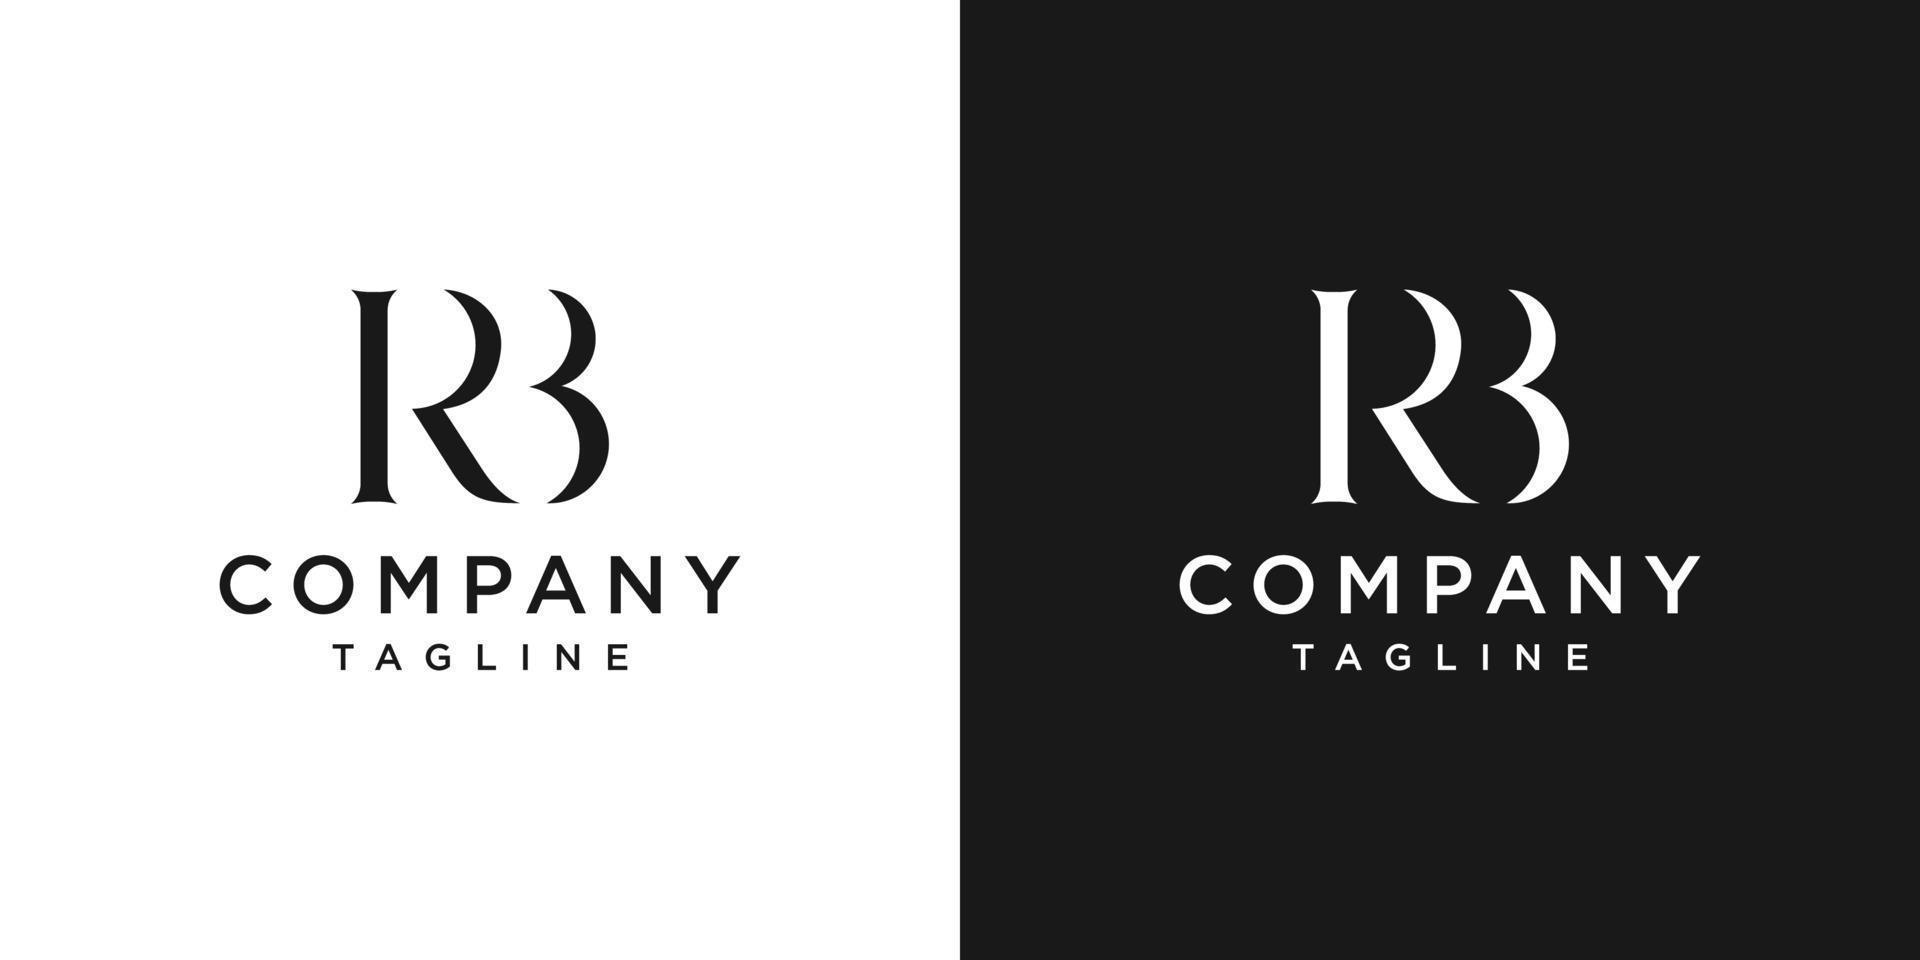 creatieve brief rb monogram logo ontwerp pictogrammalplaatje witte en zwarte achtergrond vector